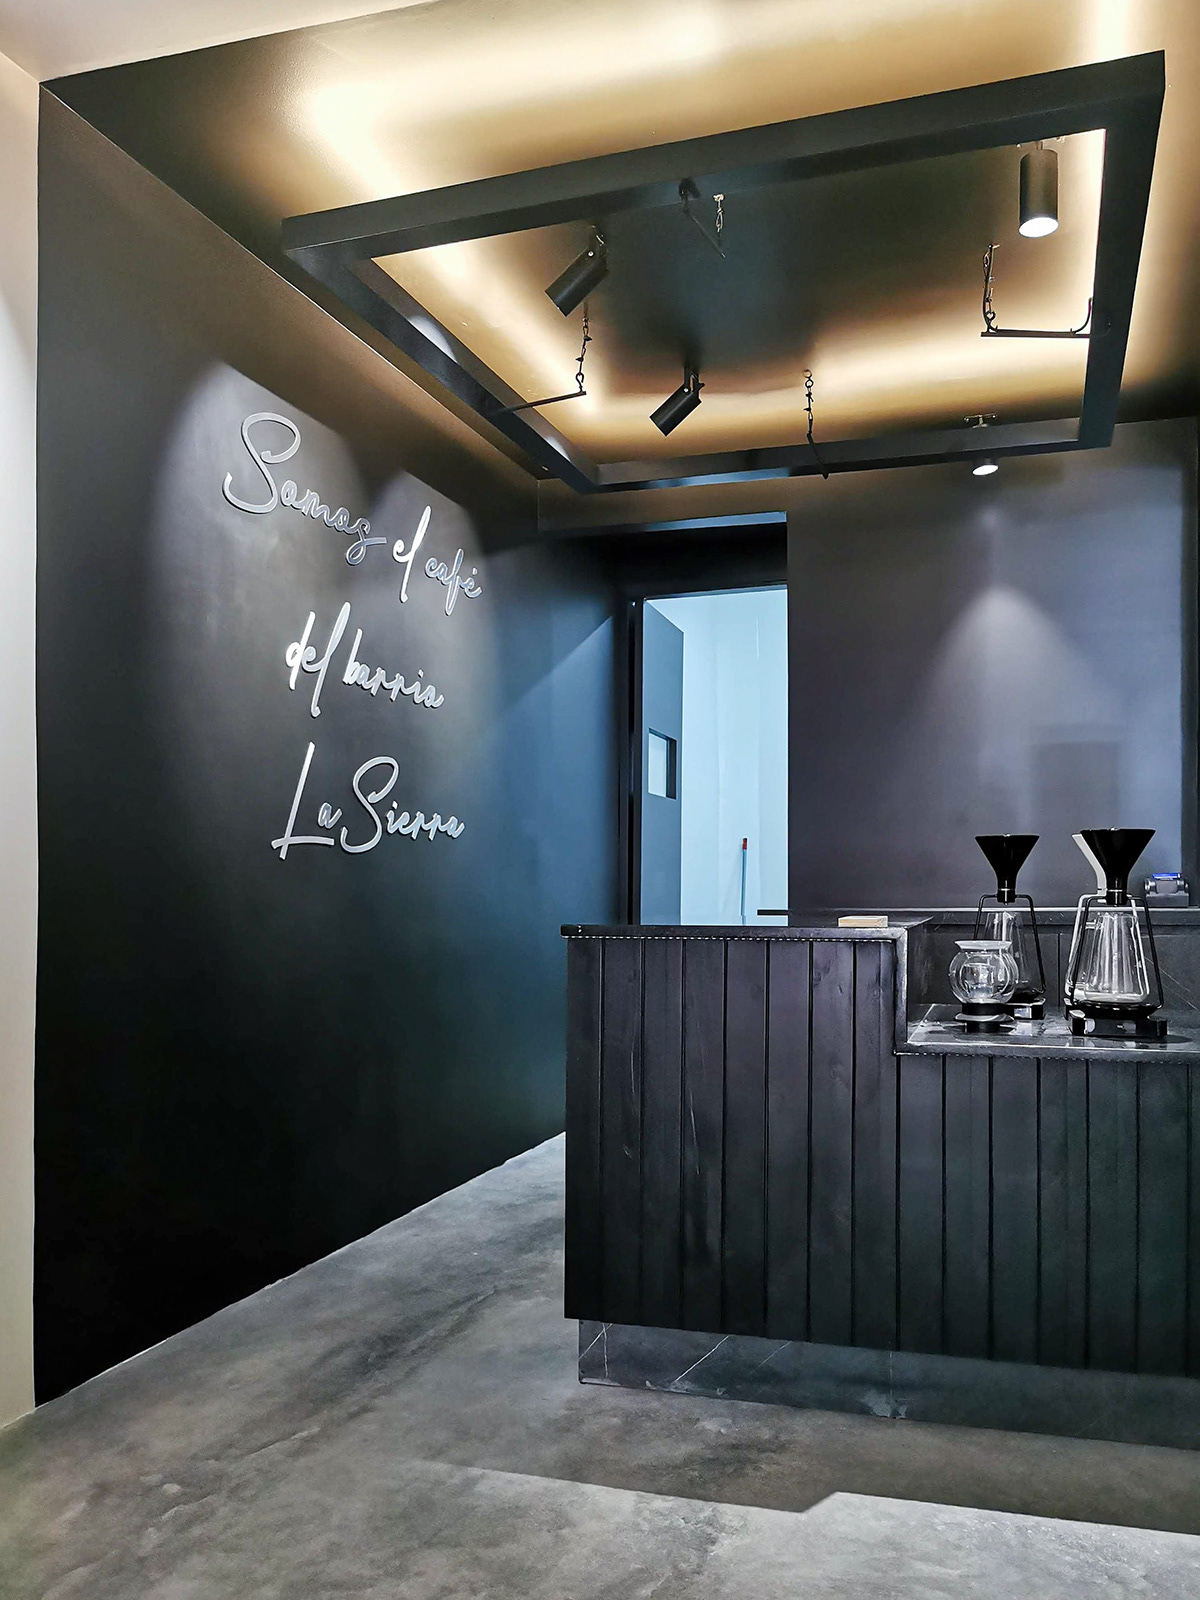 arquitectura cafe coffe diseño Interiorismo medellin tienda